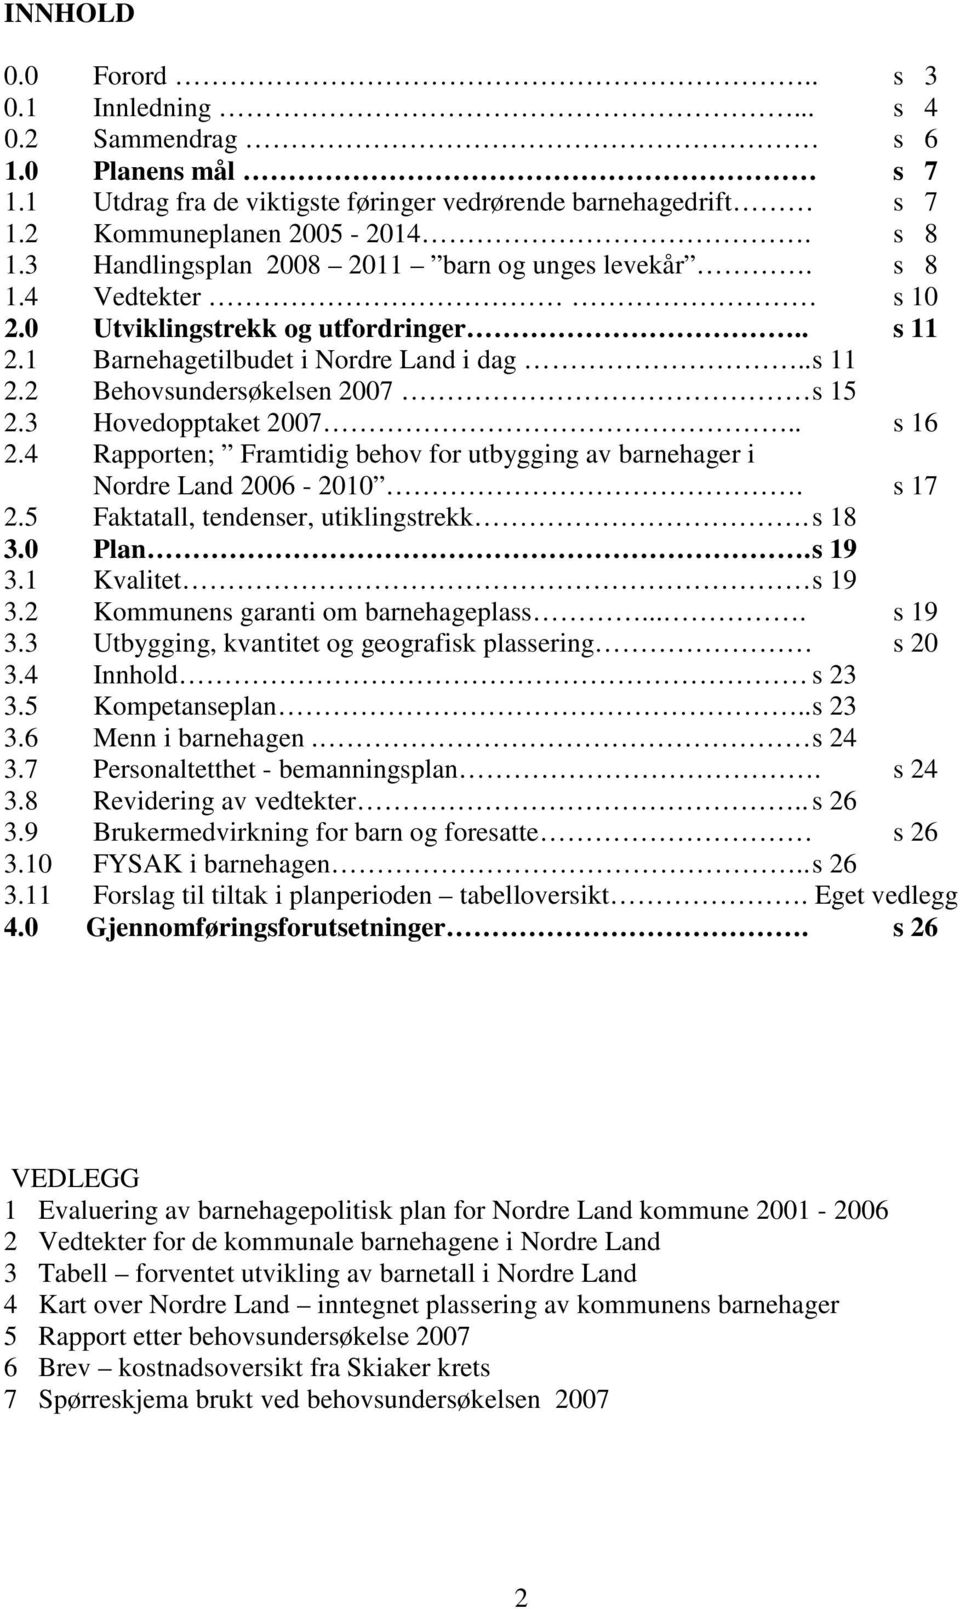 3 Hovedopptaket 2007.. s 16 2.4 Rapporten; Framtidig behov for utbygging av barnehager i Nordre Land 2006-2010. s 17 2.5 Faktatall, tendenser, utiklingstrekk. s 18 3.0 Plan. s 19 3.1 Kvalitet s 19 3.